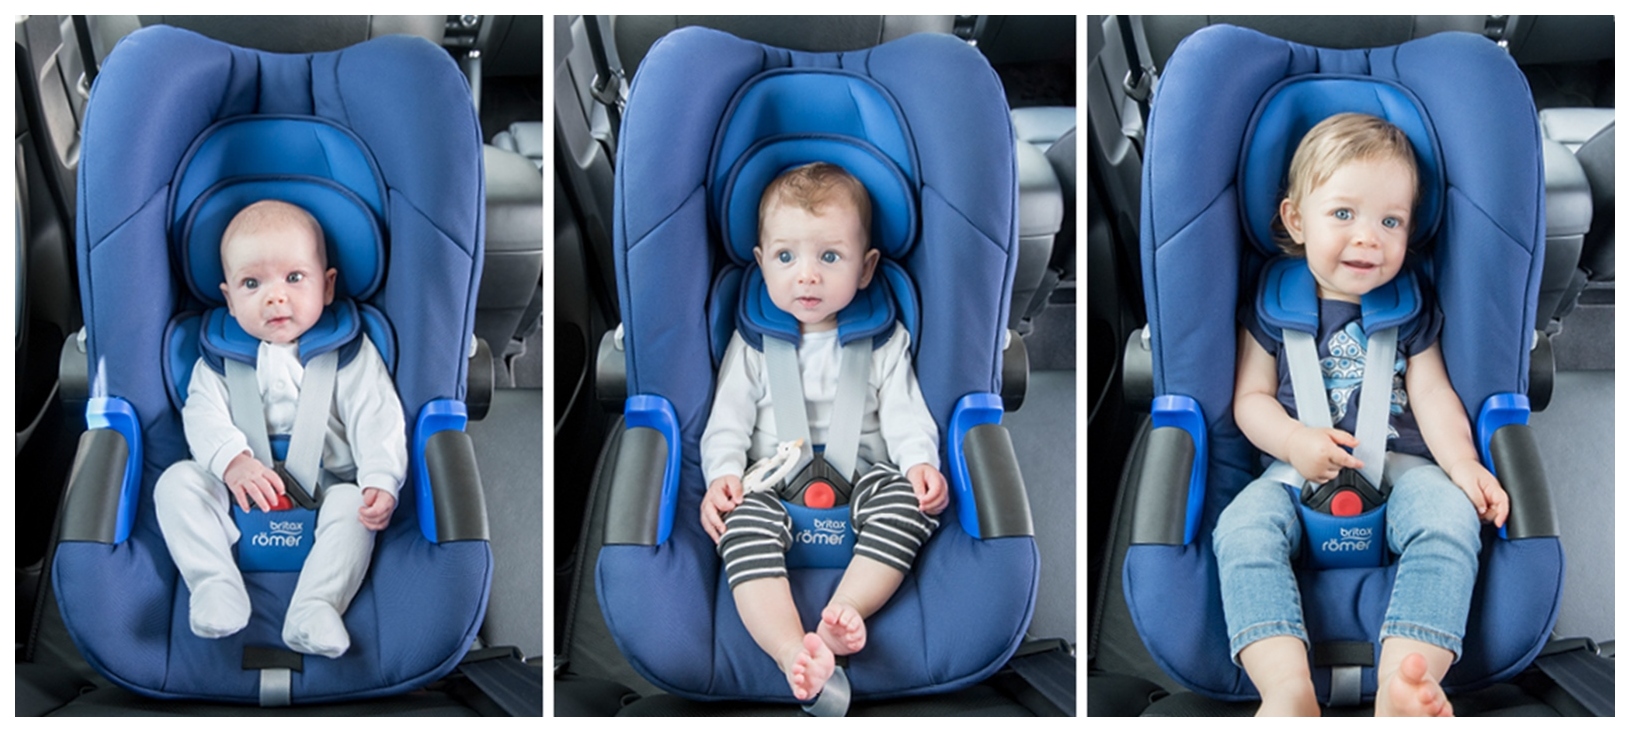 מעצורים מותאמים לגיל: התאמת מושבי רכב להתפתחות הילד שלך